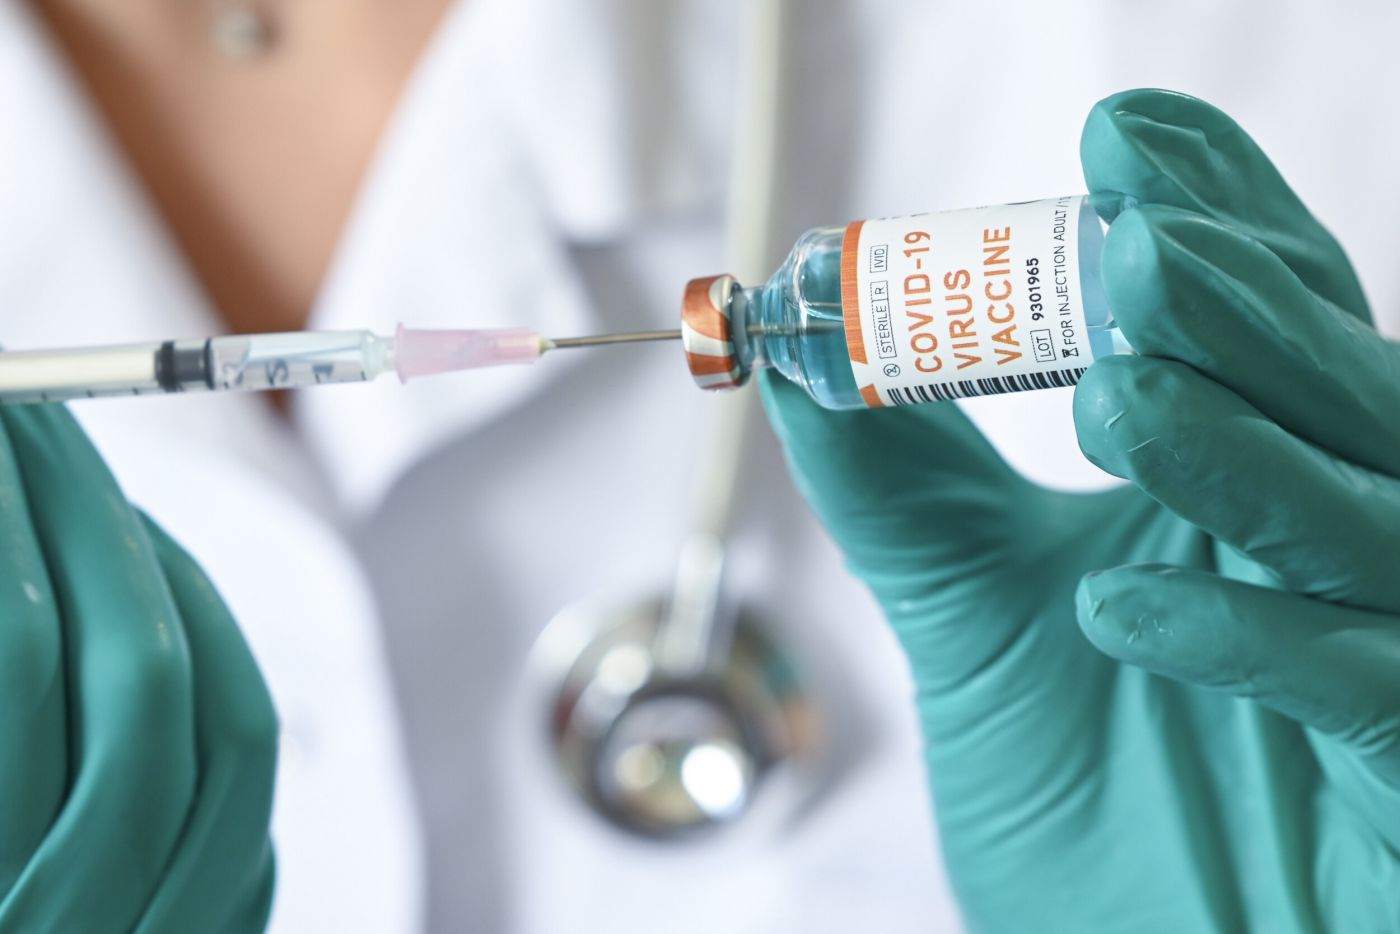 Ανοίγουν στόματα στην Ευρωβουλή: «Μετά τα εμβόλια – covid έχουμε 23 φορές περισσότερους θανάτους εδώ και 20 χρόνια εμβολιασμών»